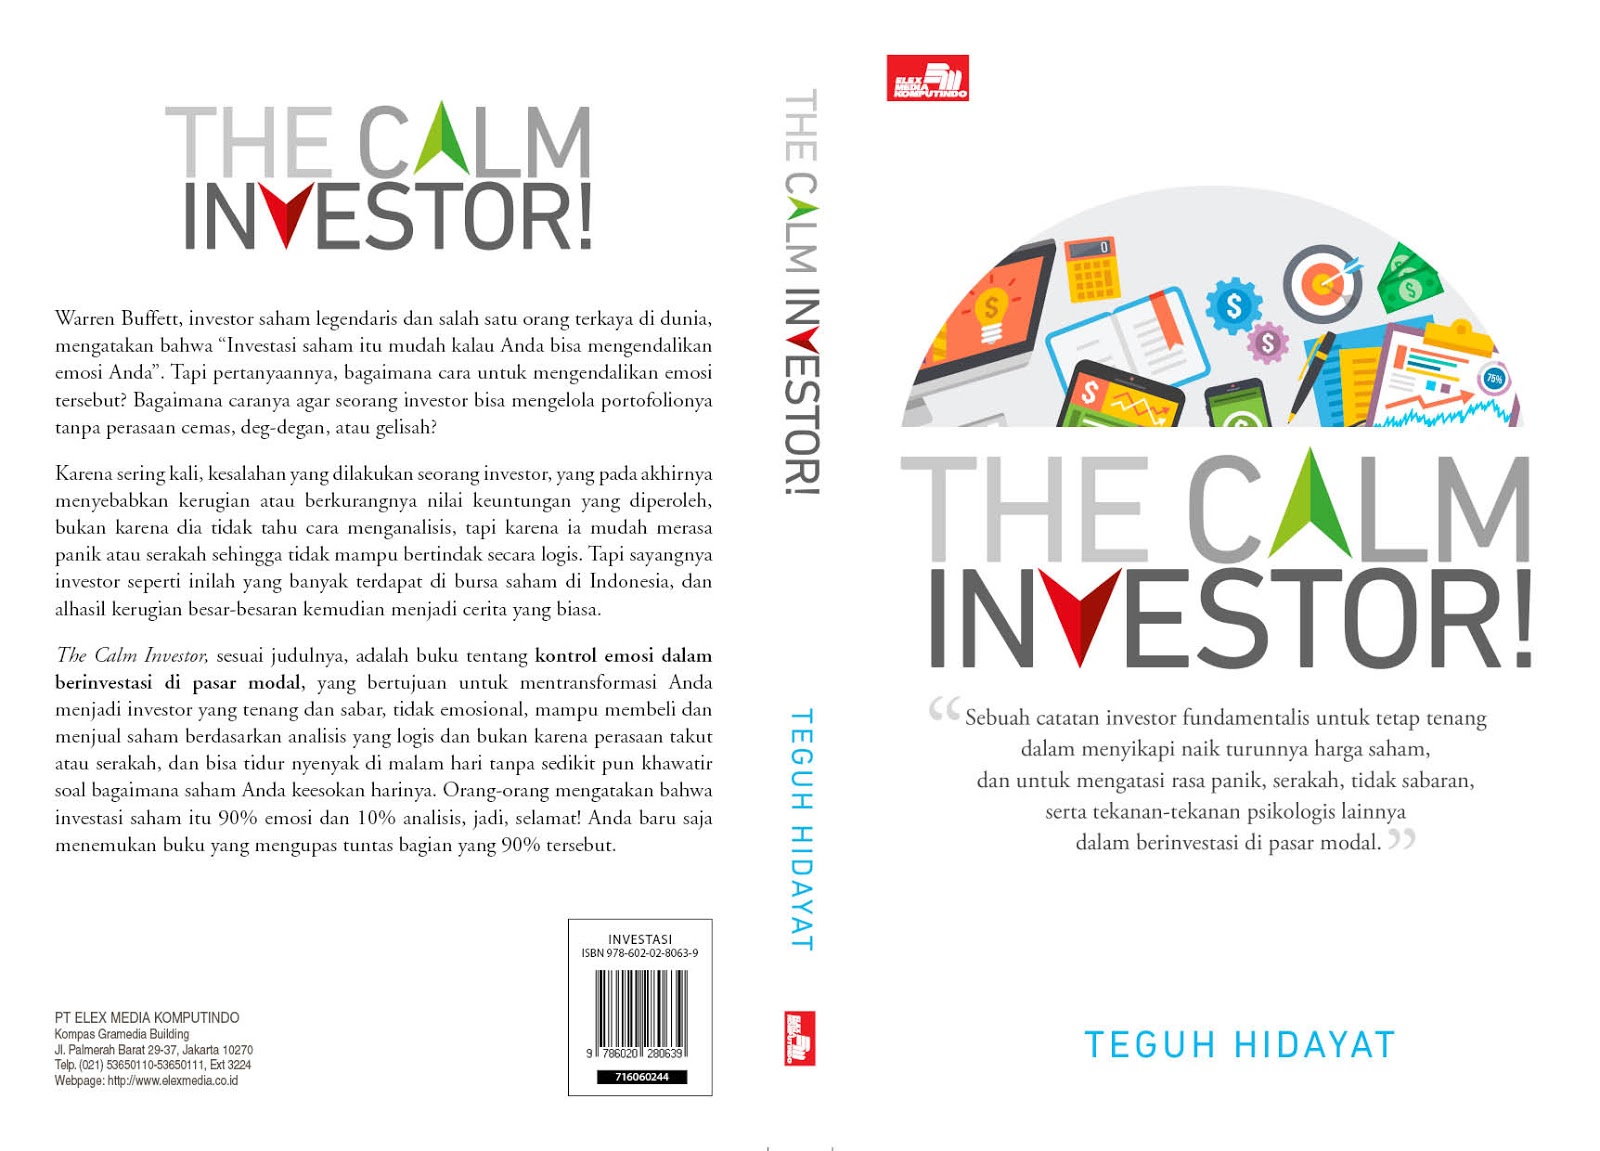 Indonesia Value Investing: The Calm Investor!